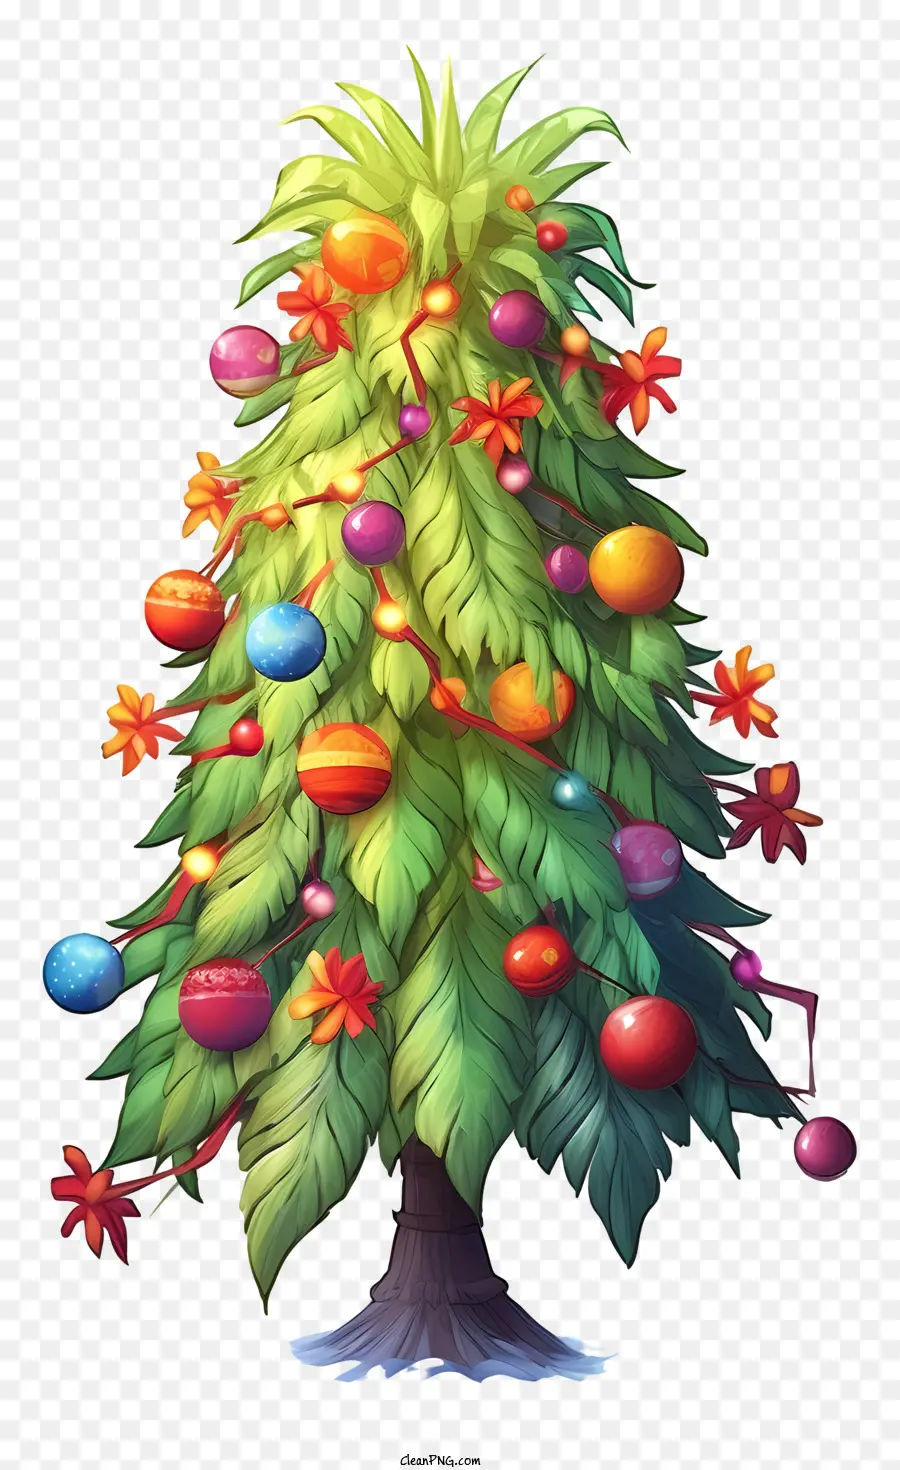 Weihnachtsbaumschmuck - Realistisches Bild des Weihnachtsbaums mit bunten Ornamenten